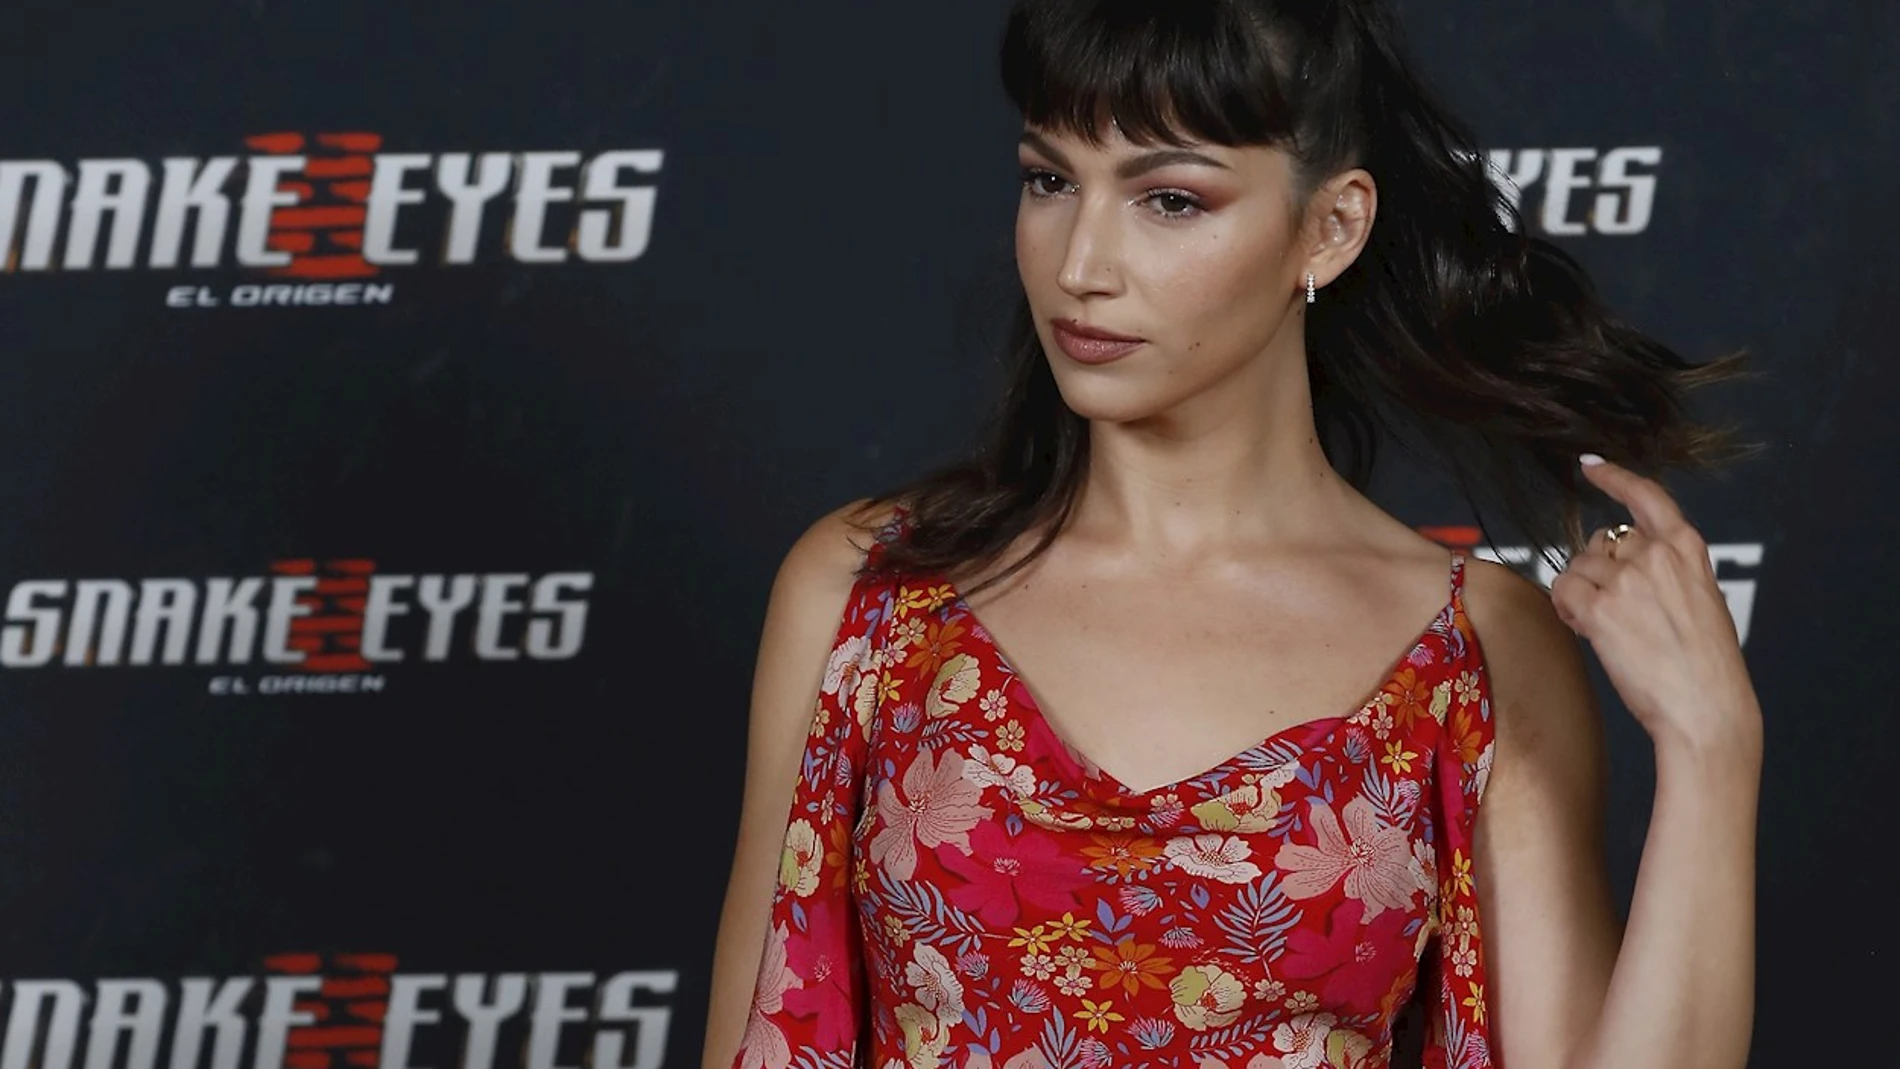 La actriz Úrsula Corberó posa durante el pase gráfico de la película 'Snake Eyes: El origen' en Madrid